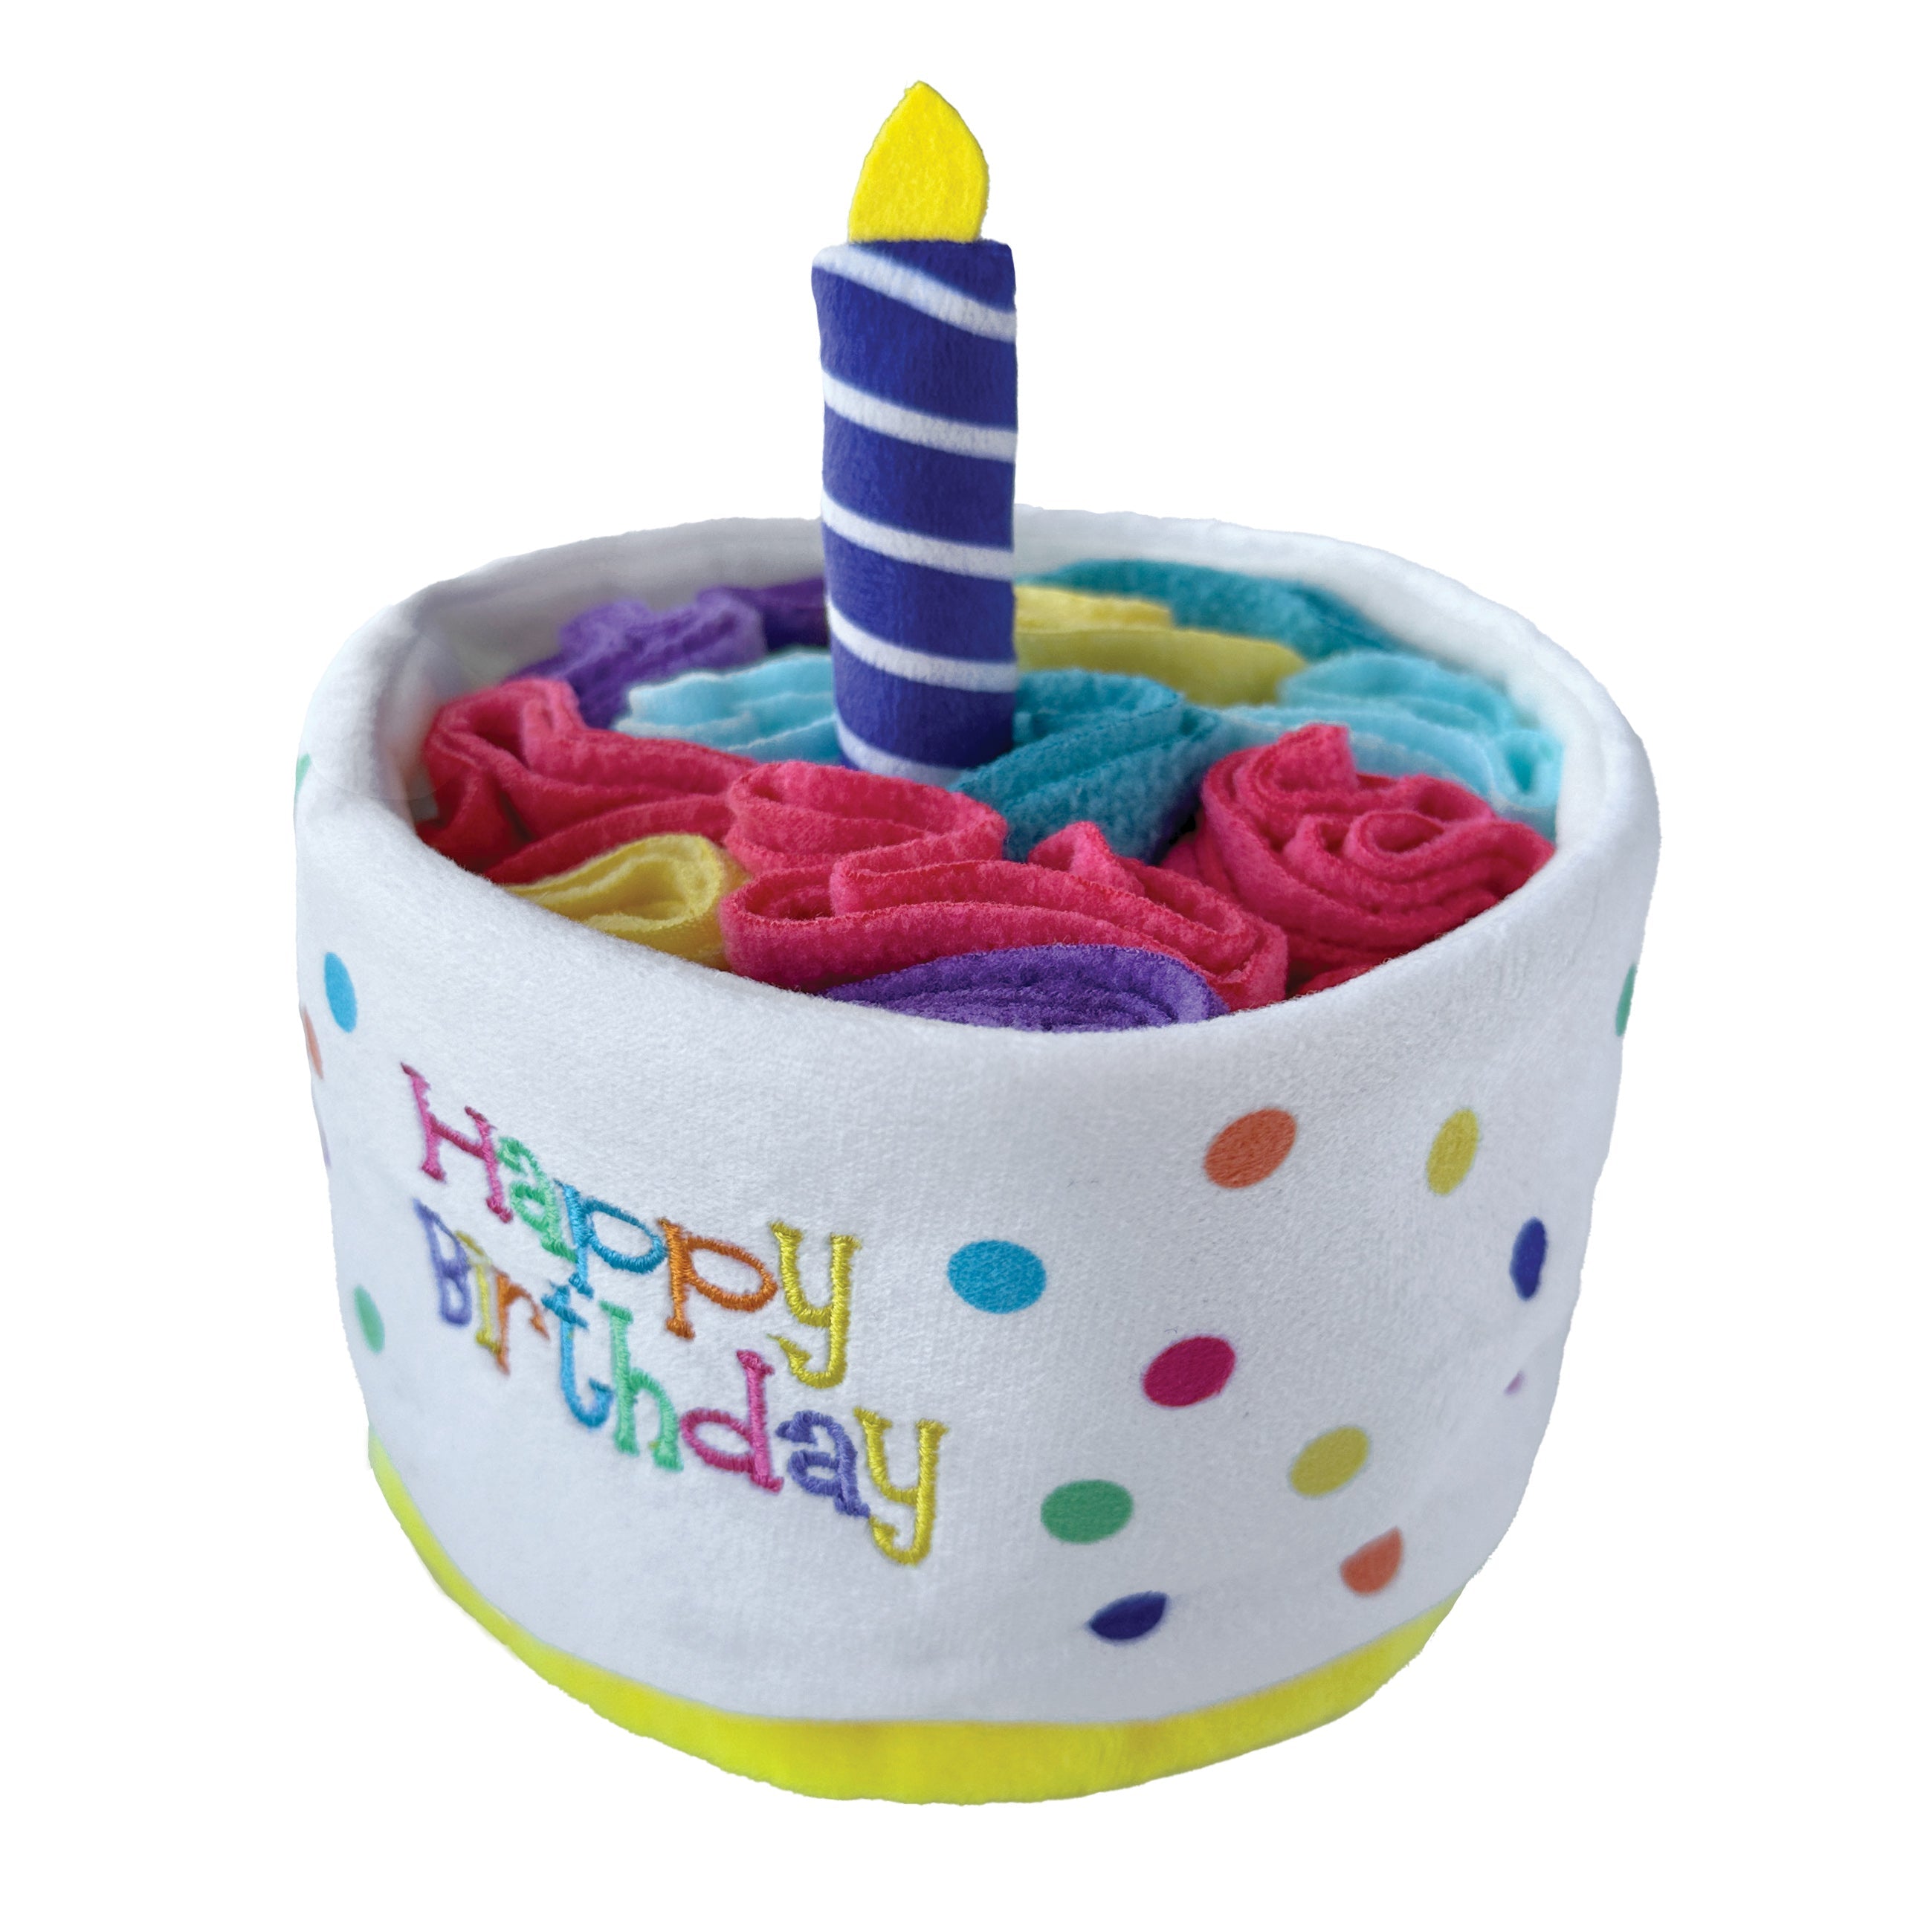 Hide 'n Seek Birthday Cake Snuffle (5